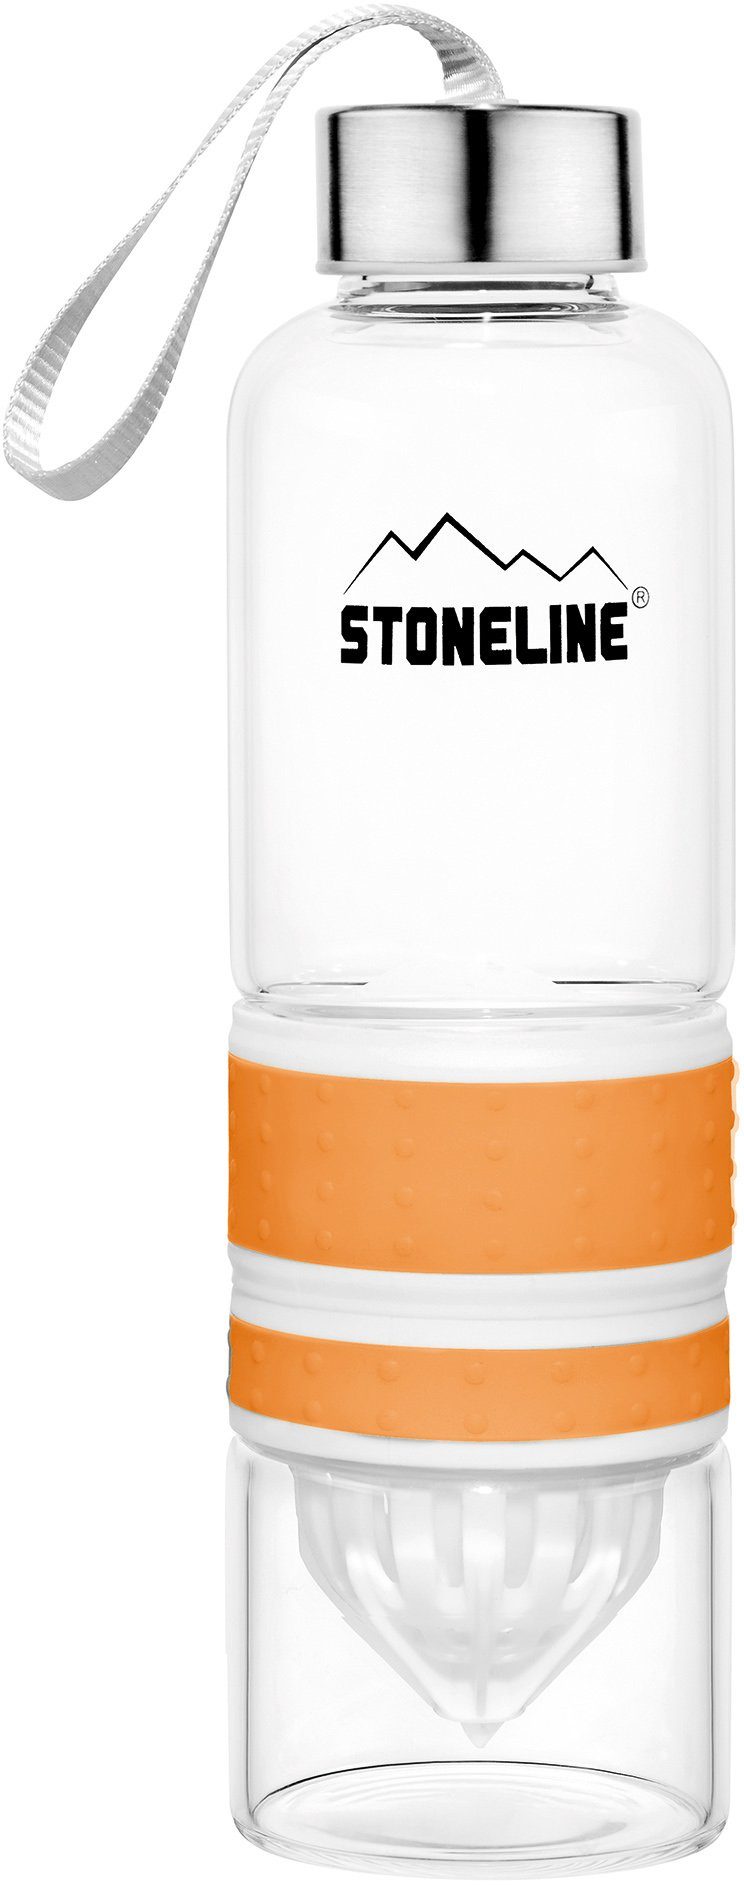 0,55 orange L STONELINE herausnehmbarer Saftpressen-Aufsatz, Trinkflasche,